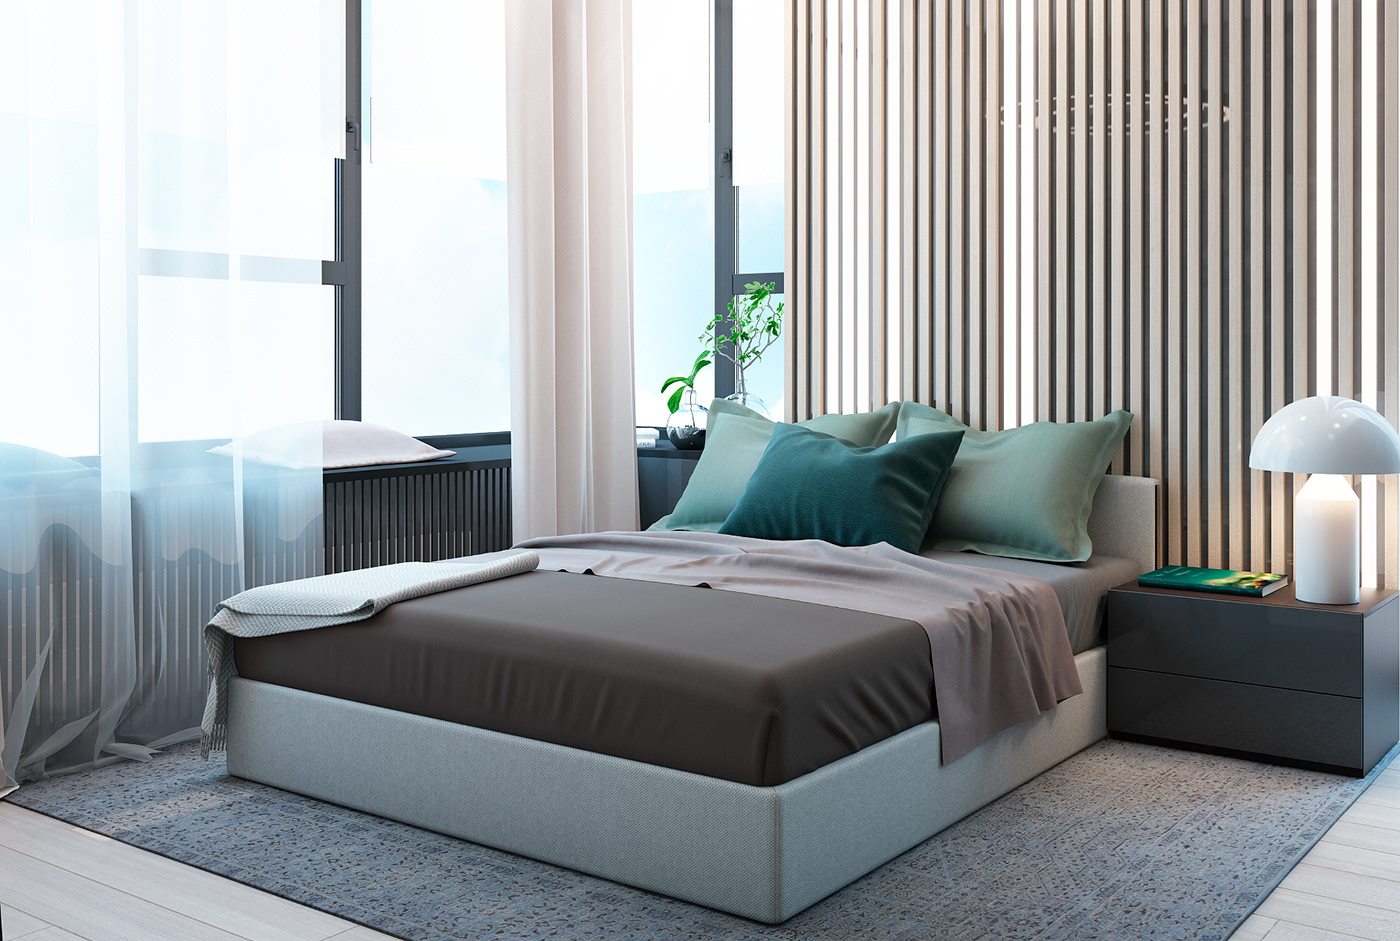 Minotti poliform BoConcept Lema interior design  Interior apartment space options design